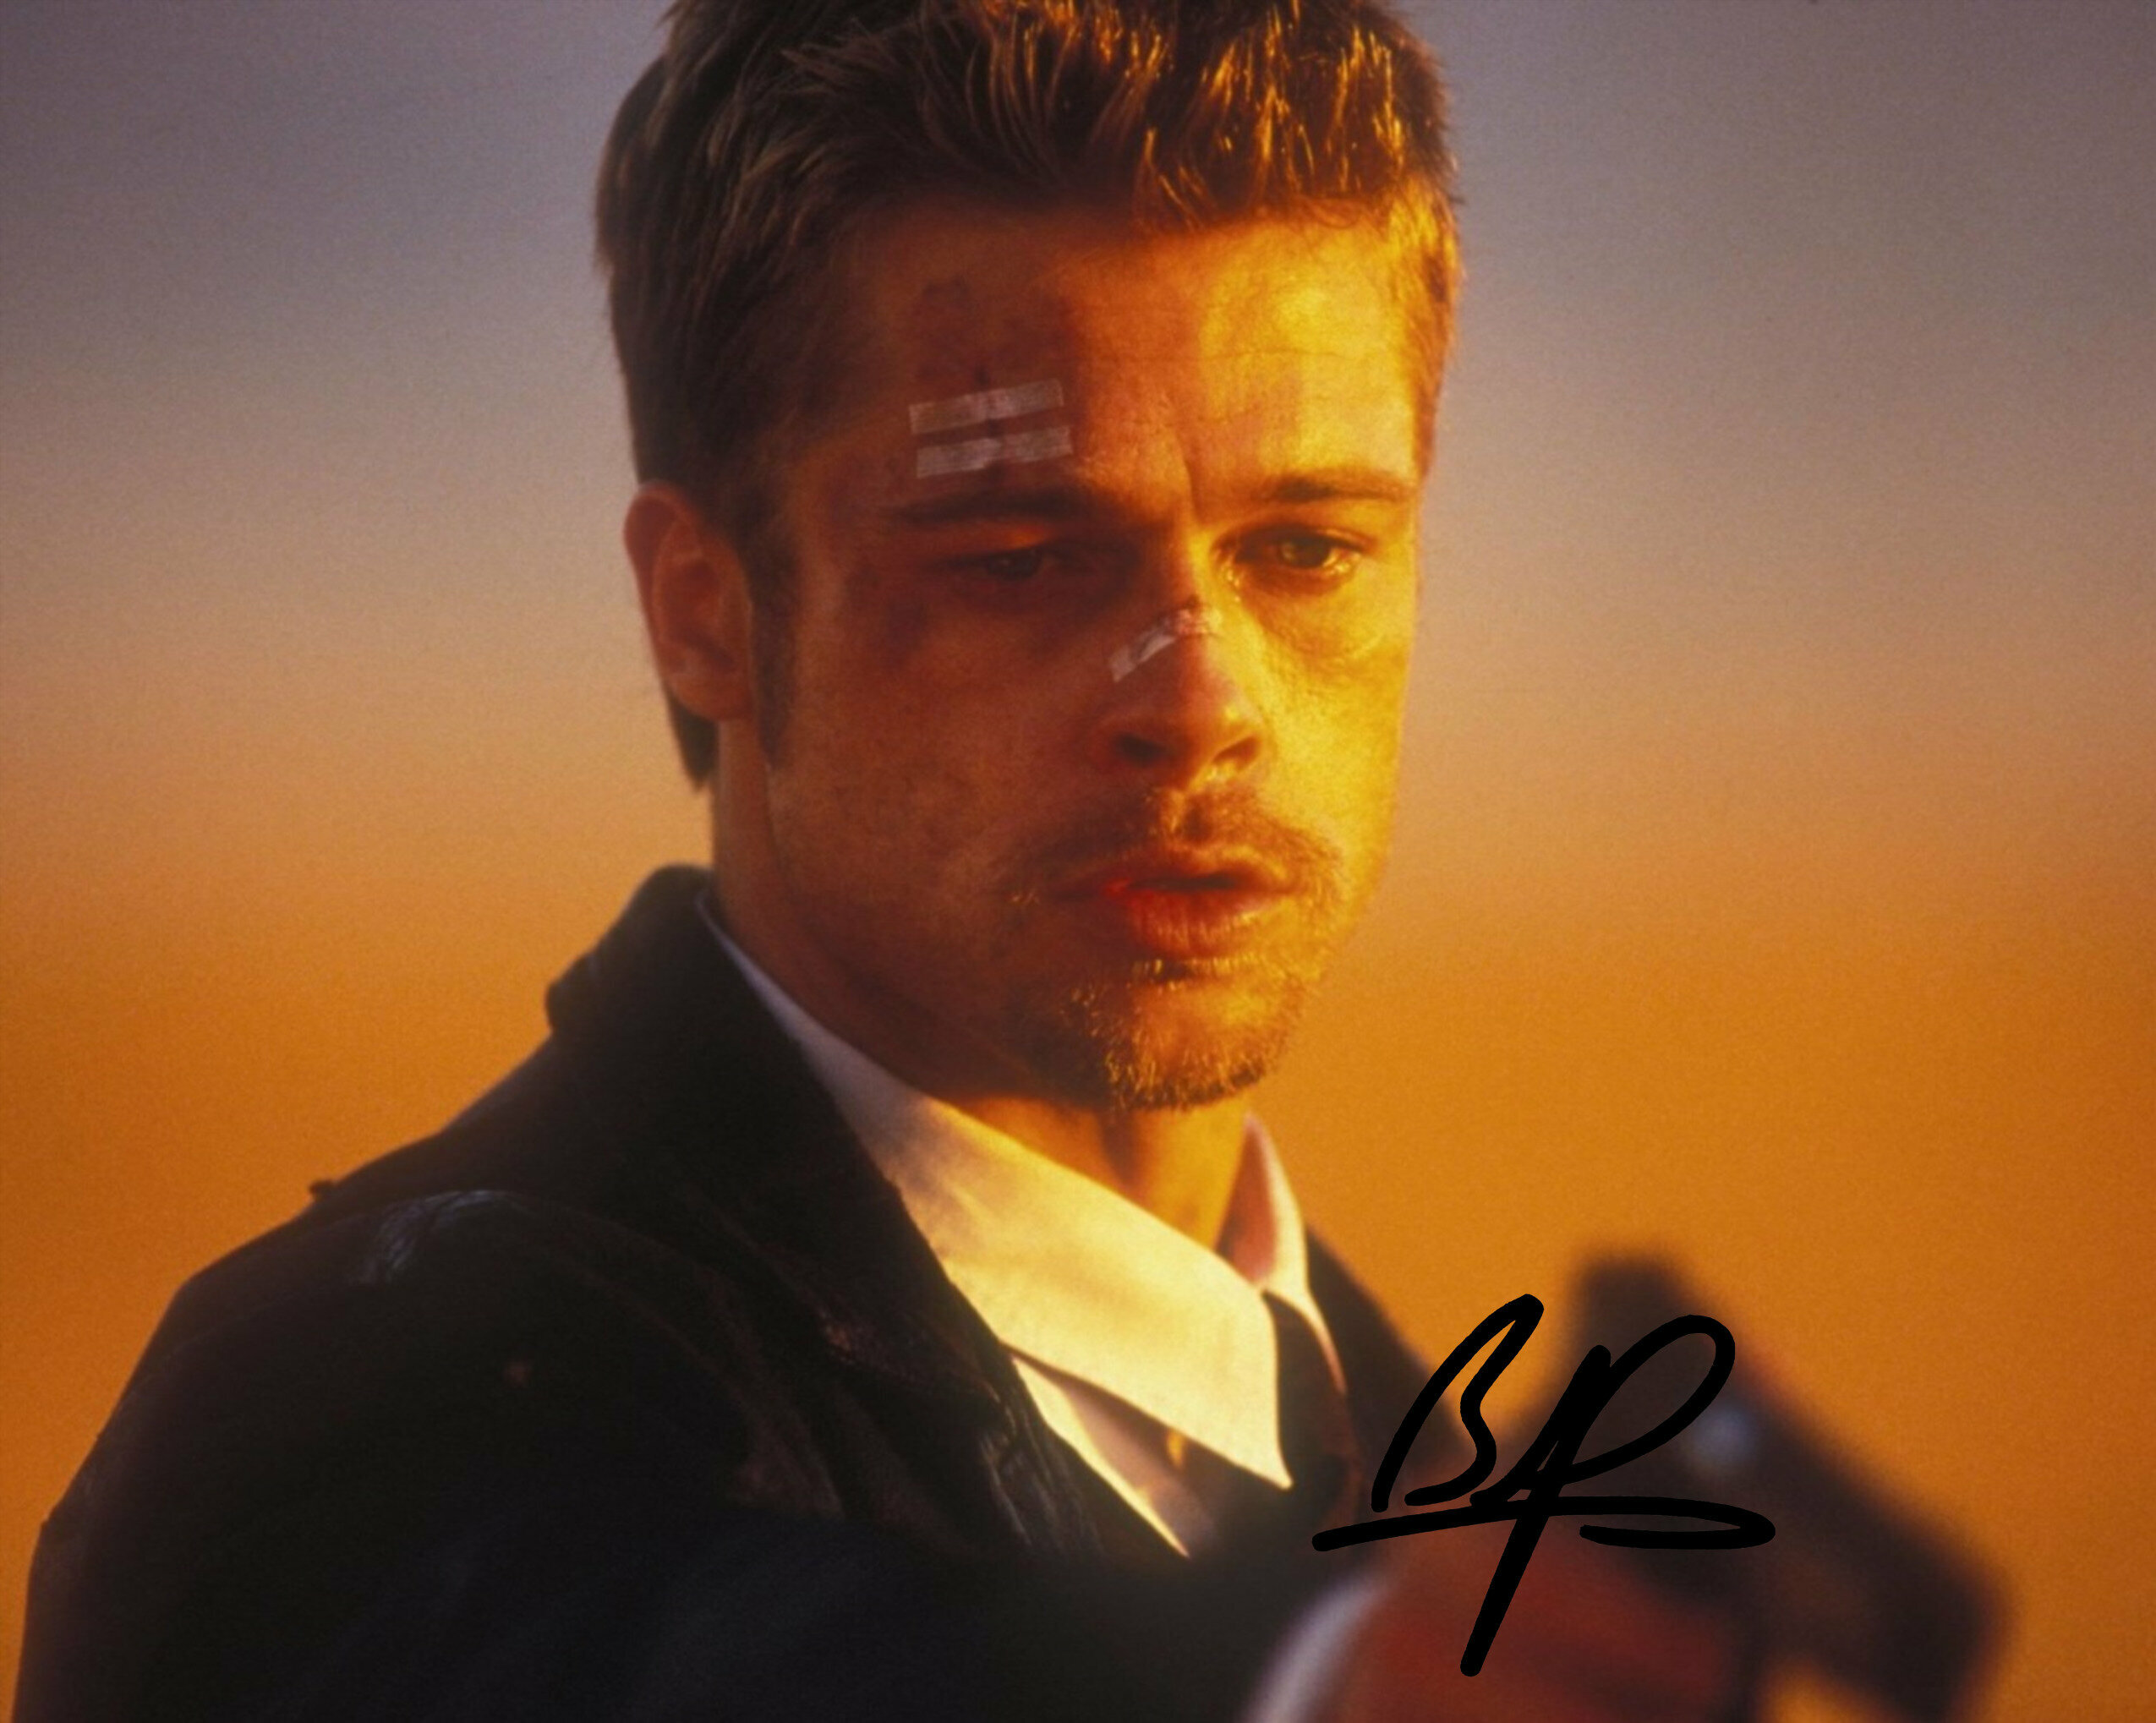 Автограф Брэд Питт Семь 1996 год - Автограф Brad Pitt Seven 1996 - 20х25 см